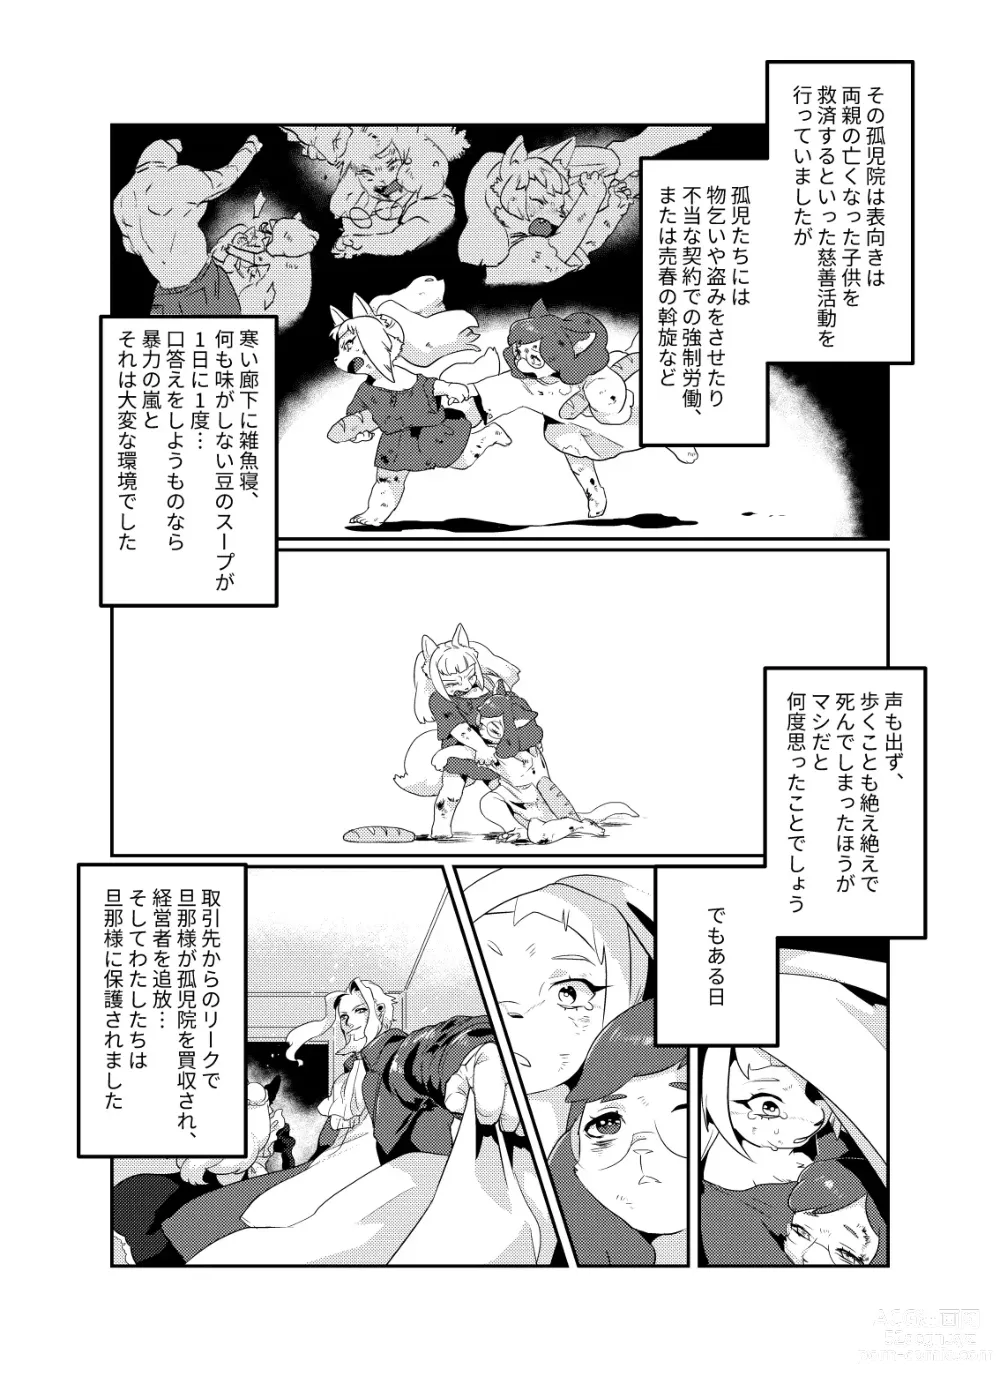 Page 11 of doujinshi Meido inHEAVEN